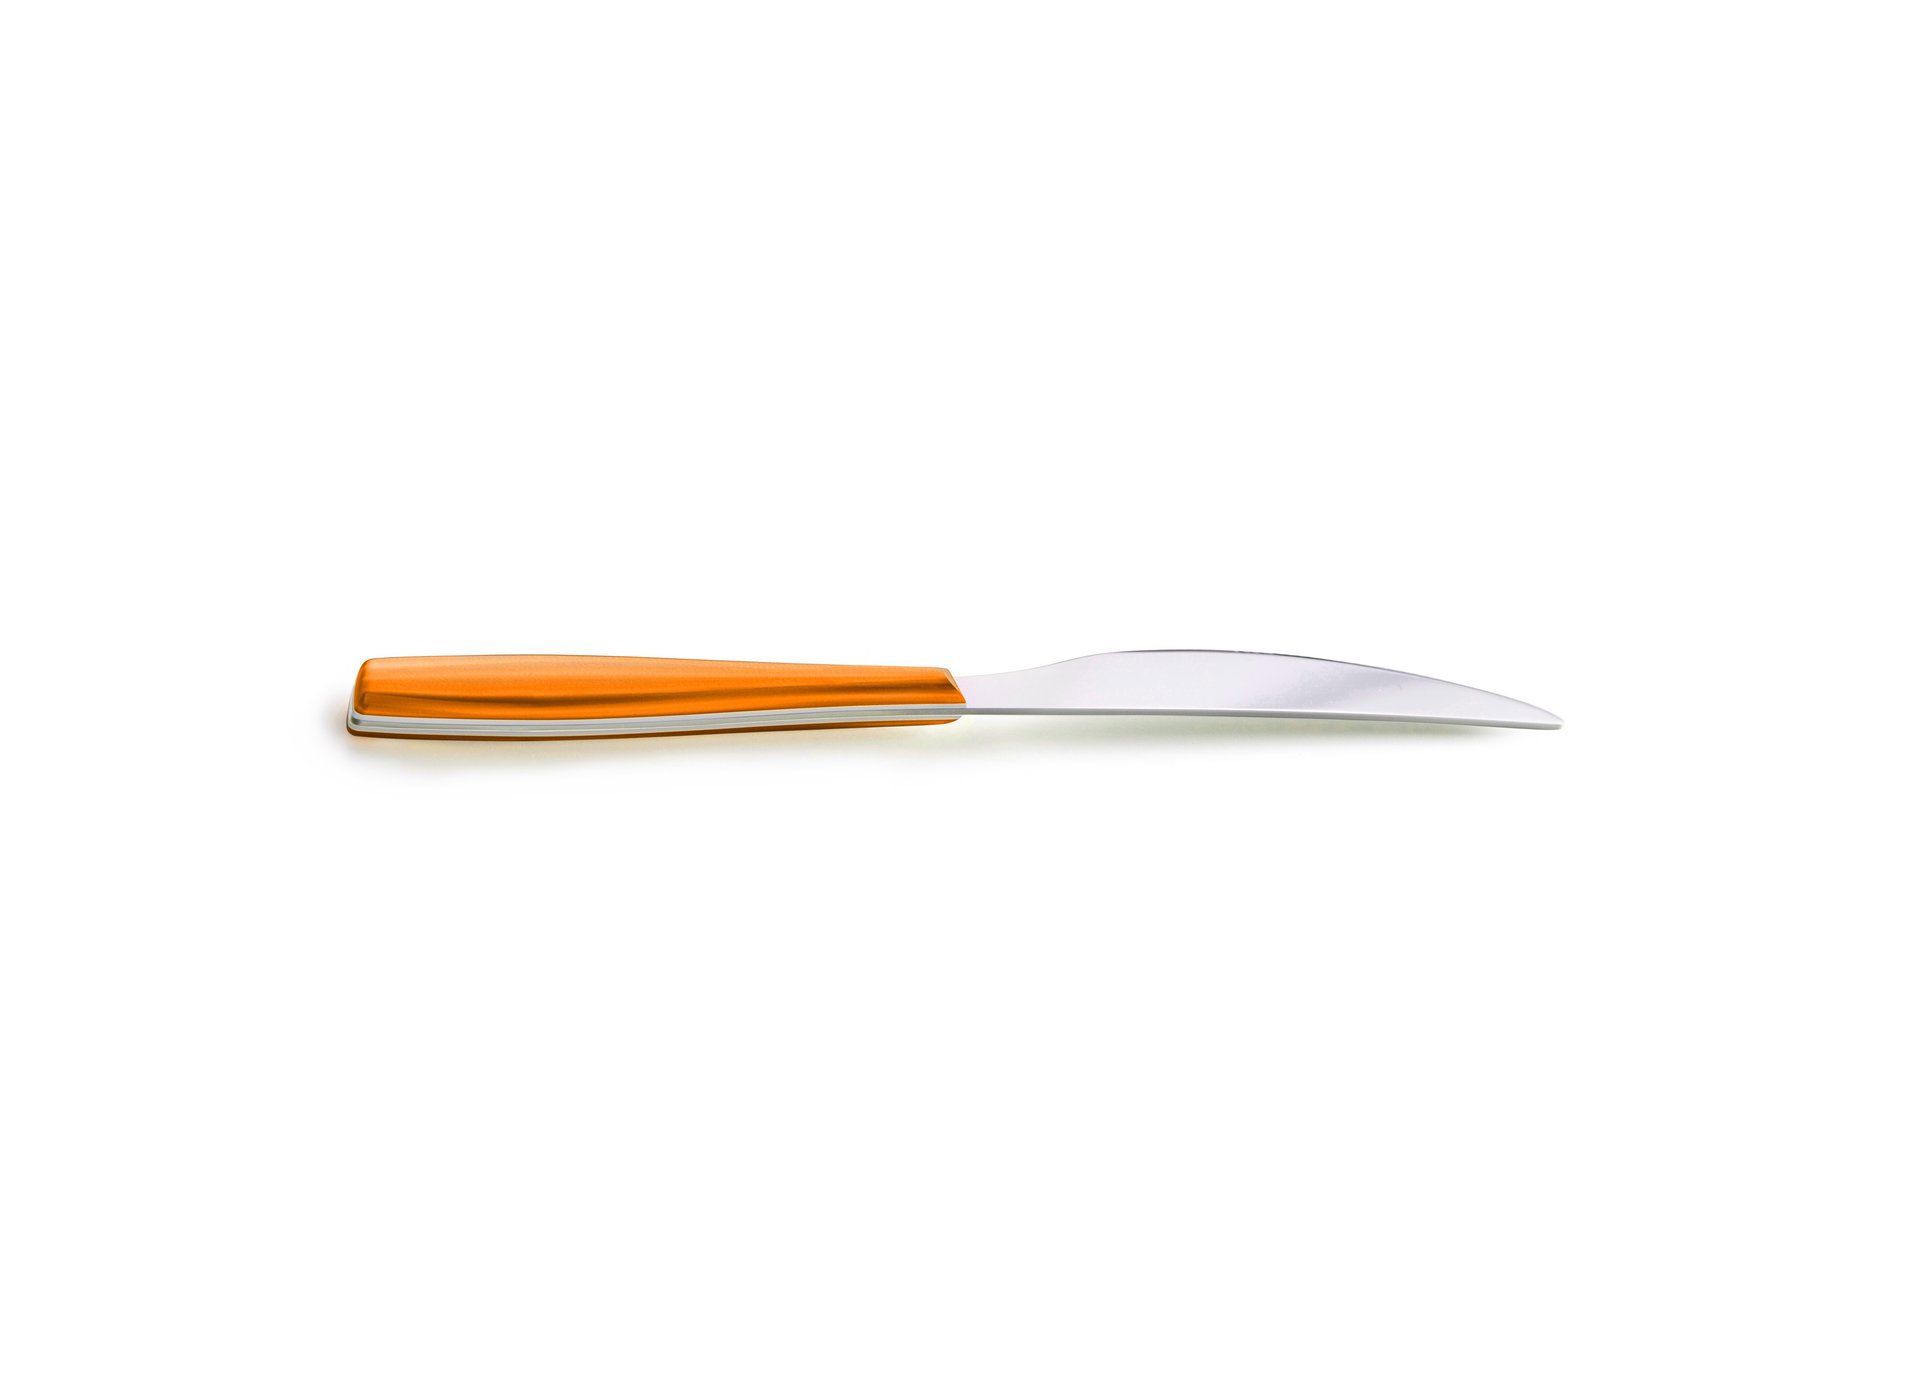 90142939 Нож столовый WAVE с пластиковой ручкой оранжевый 7506_2 2 шт STLM-0115889 EME POSATERIE